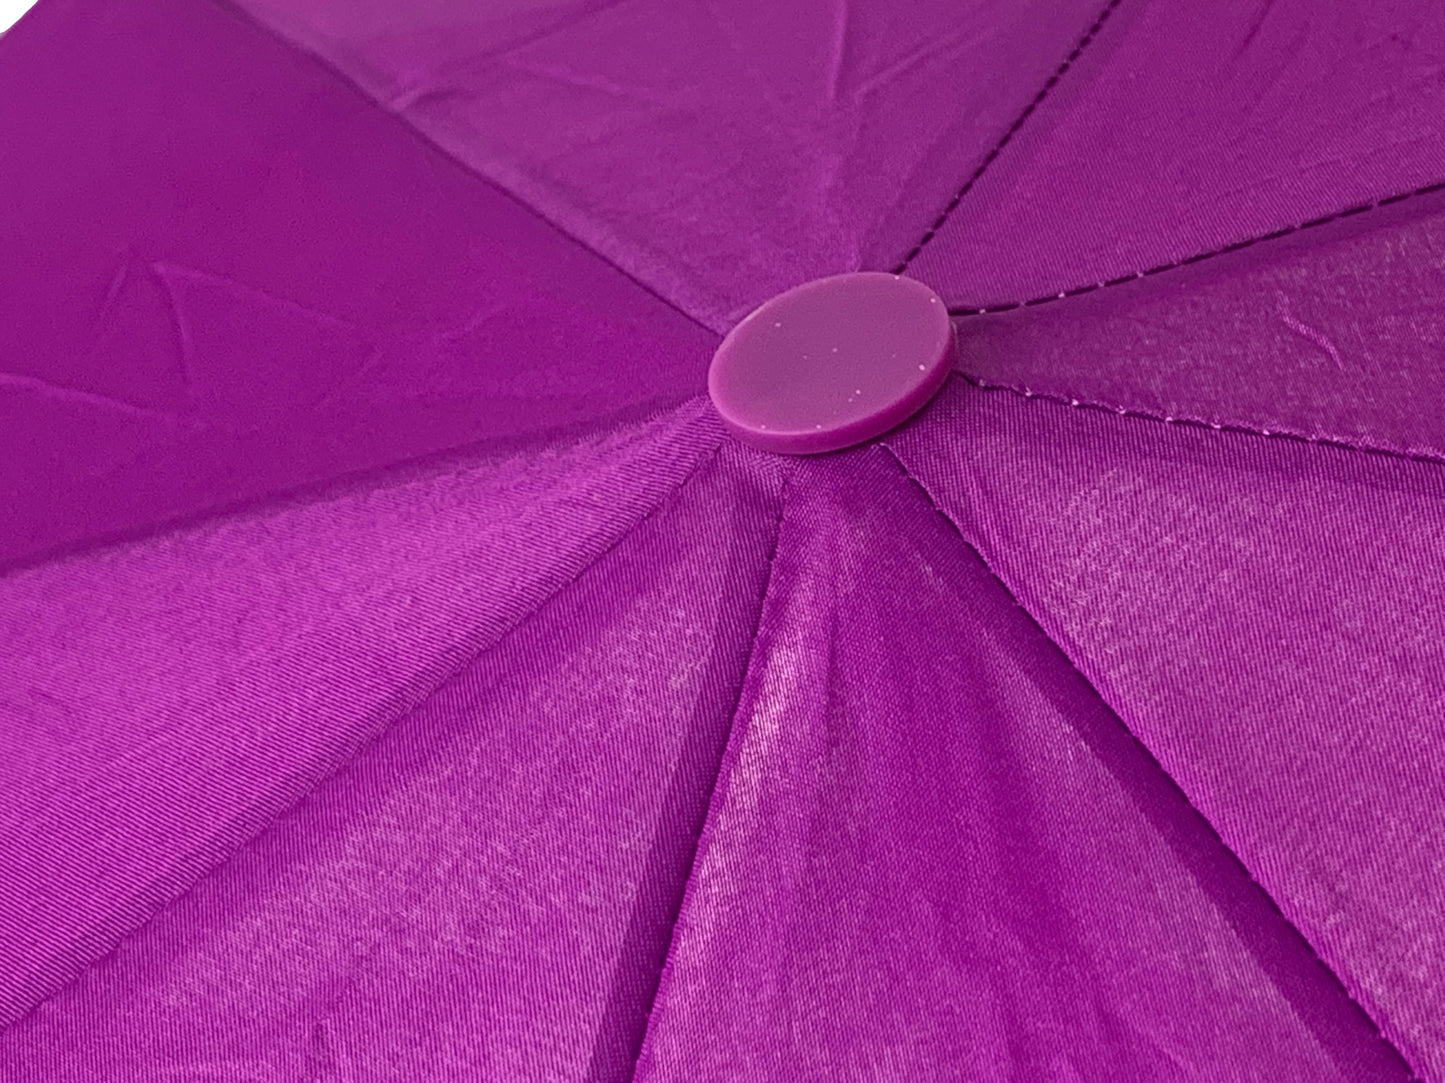 Μωβ ομπρέλα βροχής, σπαστή, αυτόματη, με πολύ όμορφη λαβή.